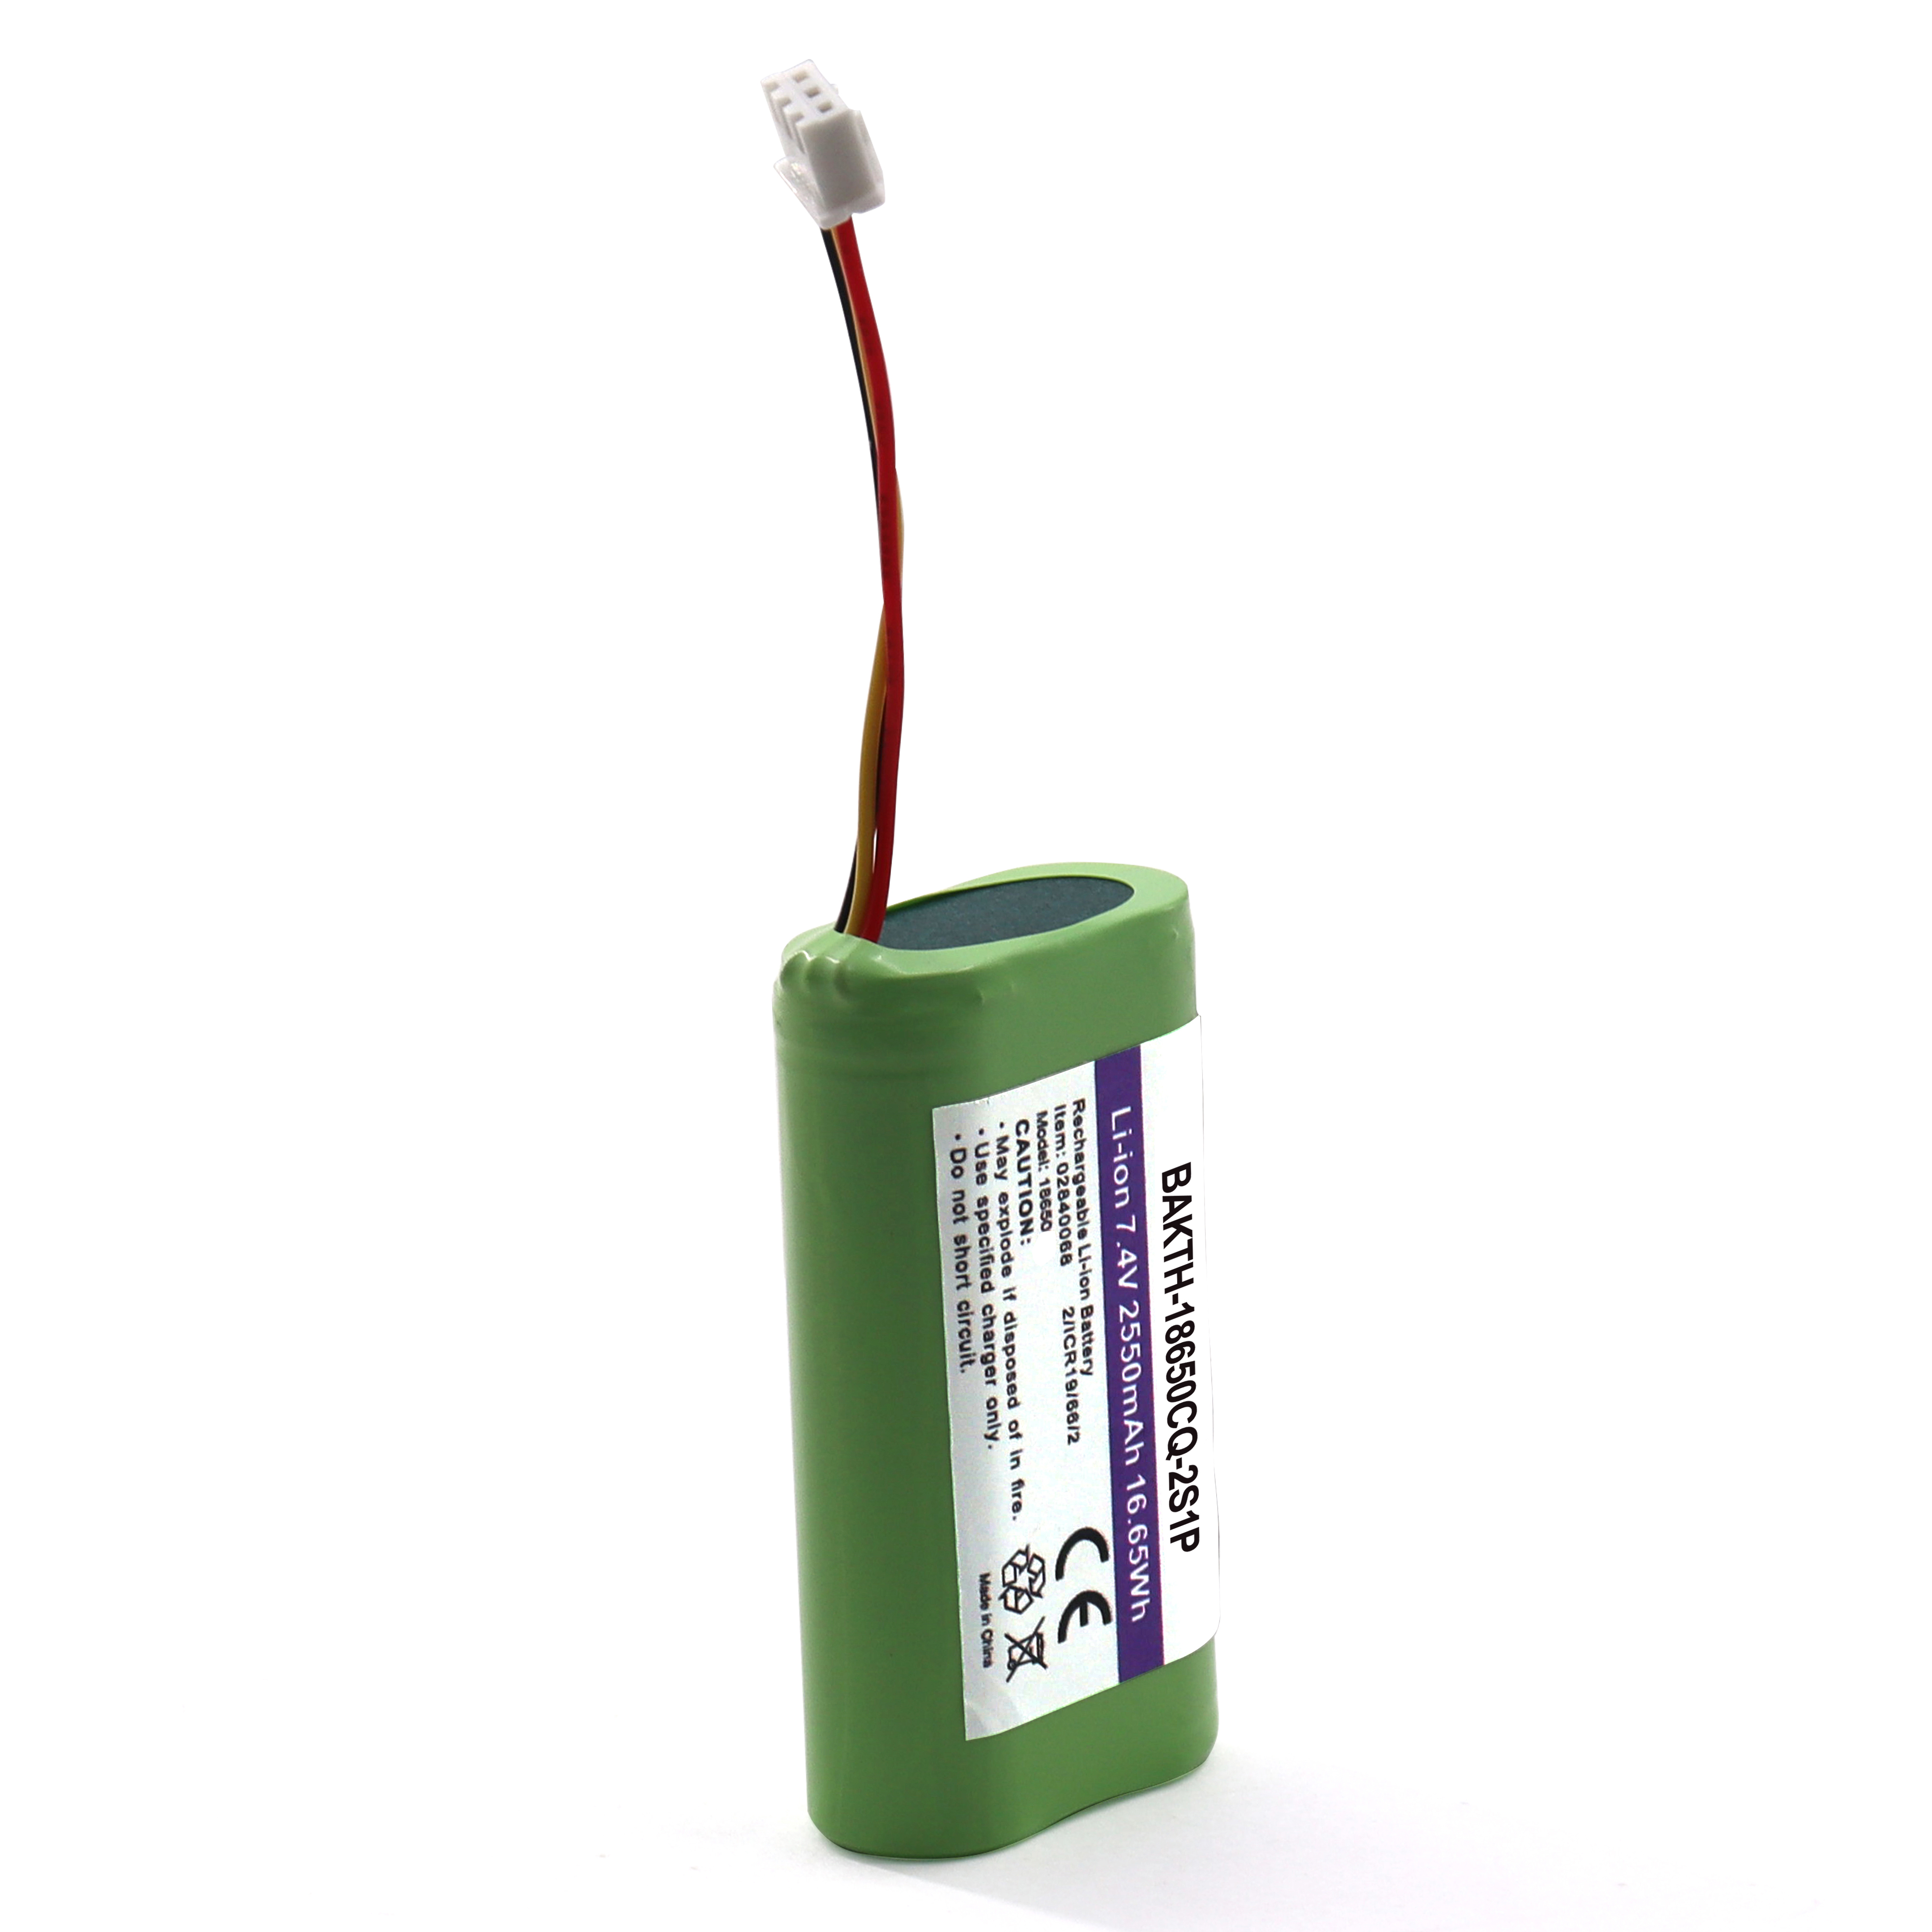 BAKTH-18650CQ-2S1P 7.4V 2550mAh Vente chaude Rechargeable Lithium Ion Battery Pack Pack Pack pour les appareils d'application électriques